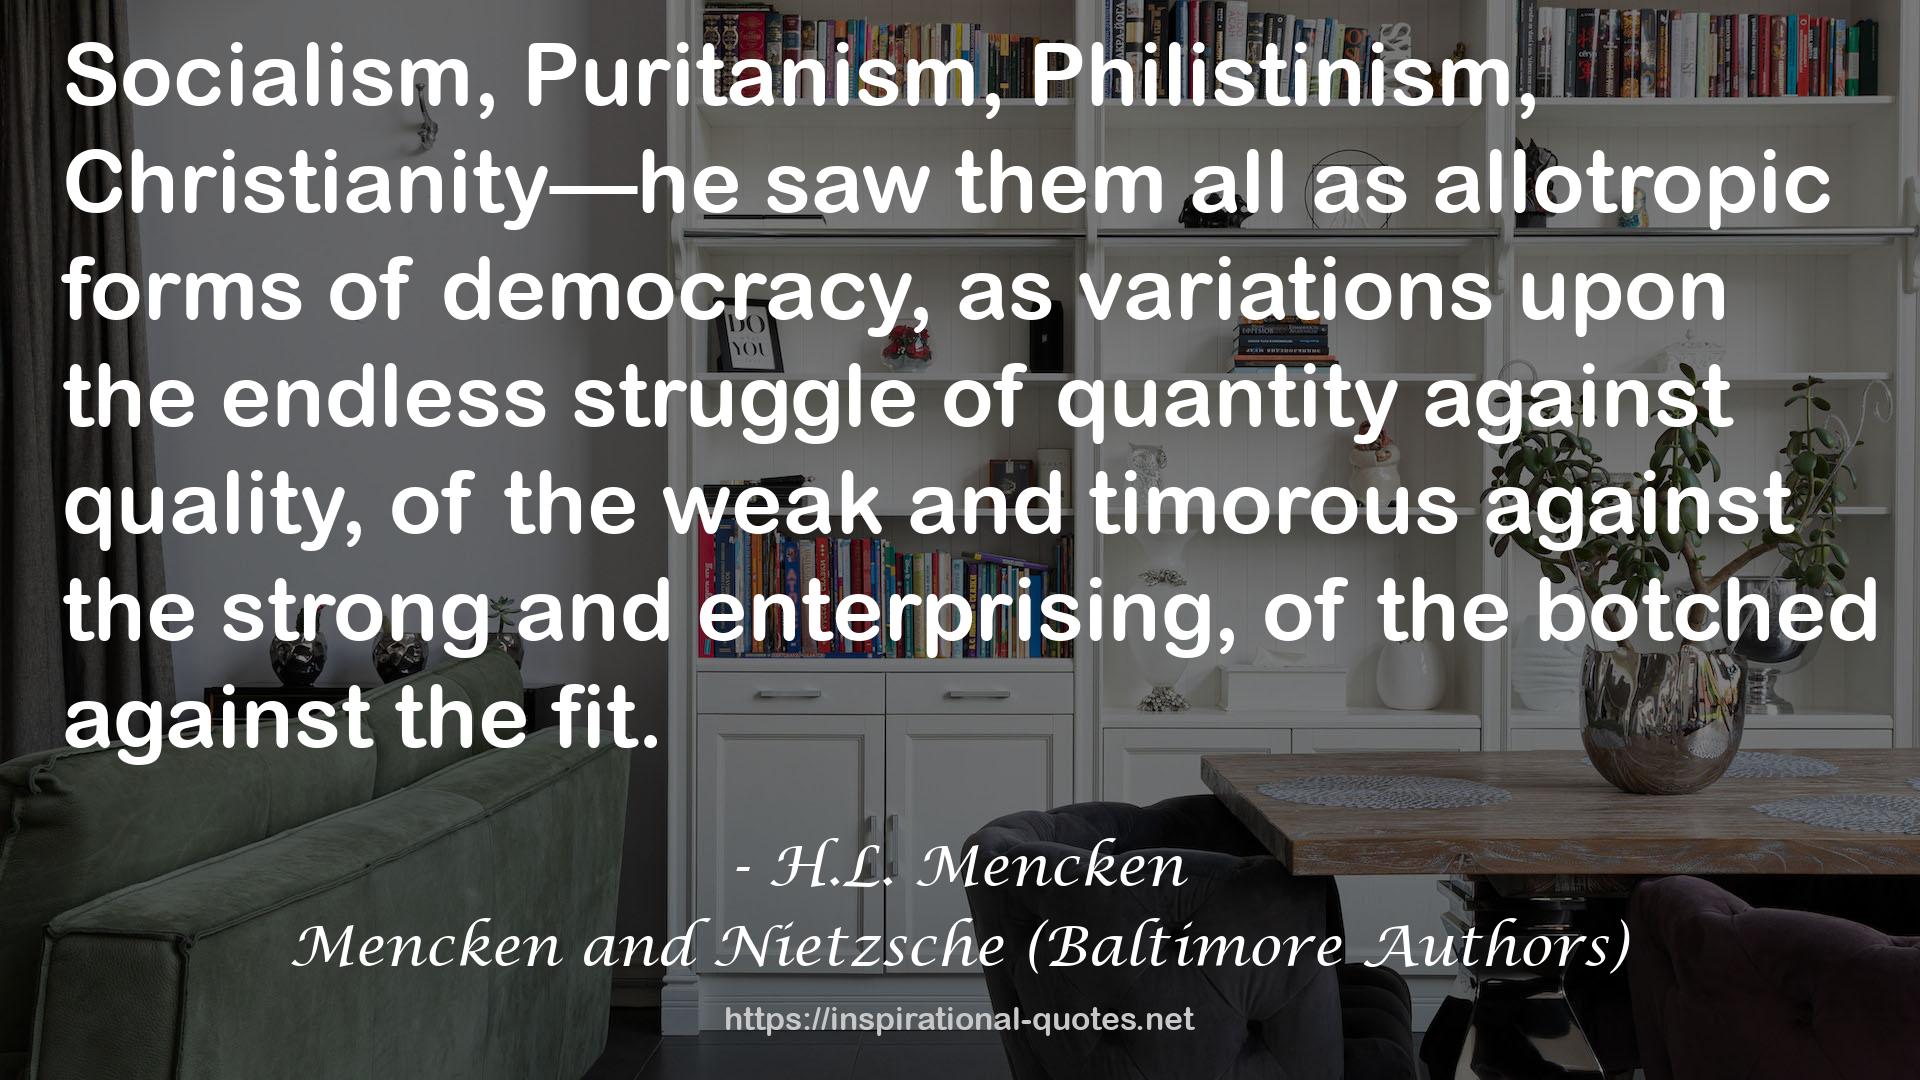 Mencken and Nietzsche (Baltimore Authors) QUOTES